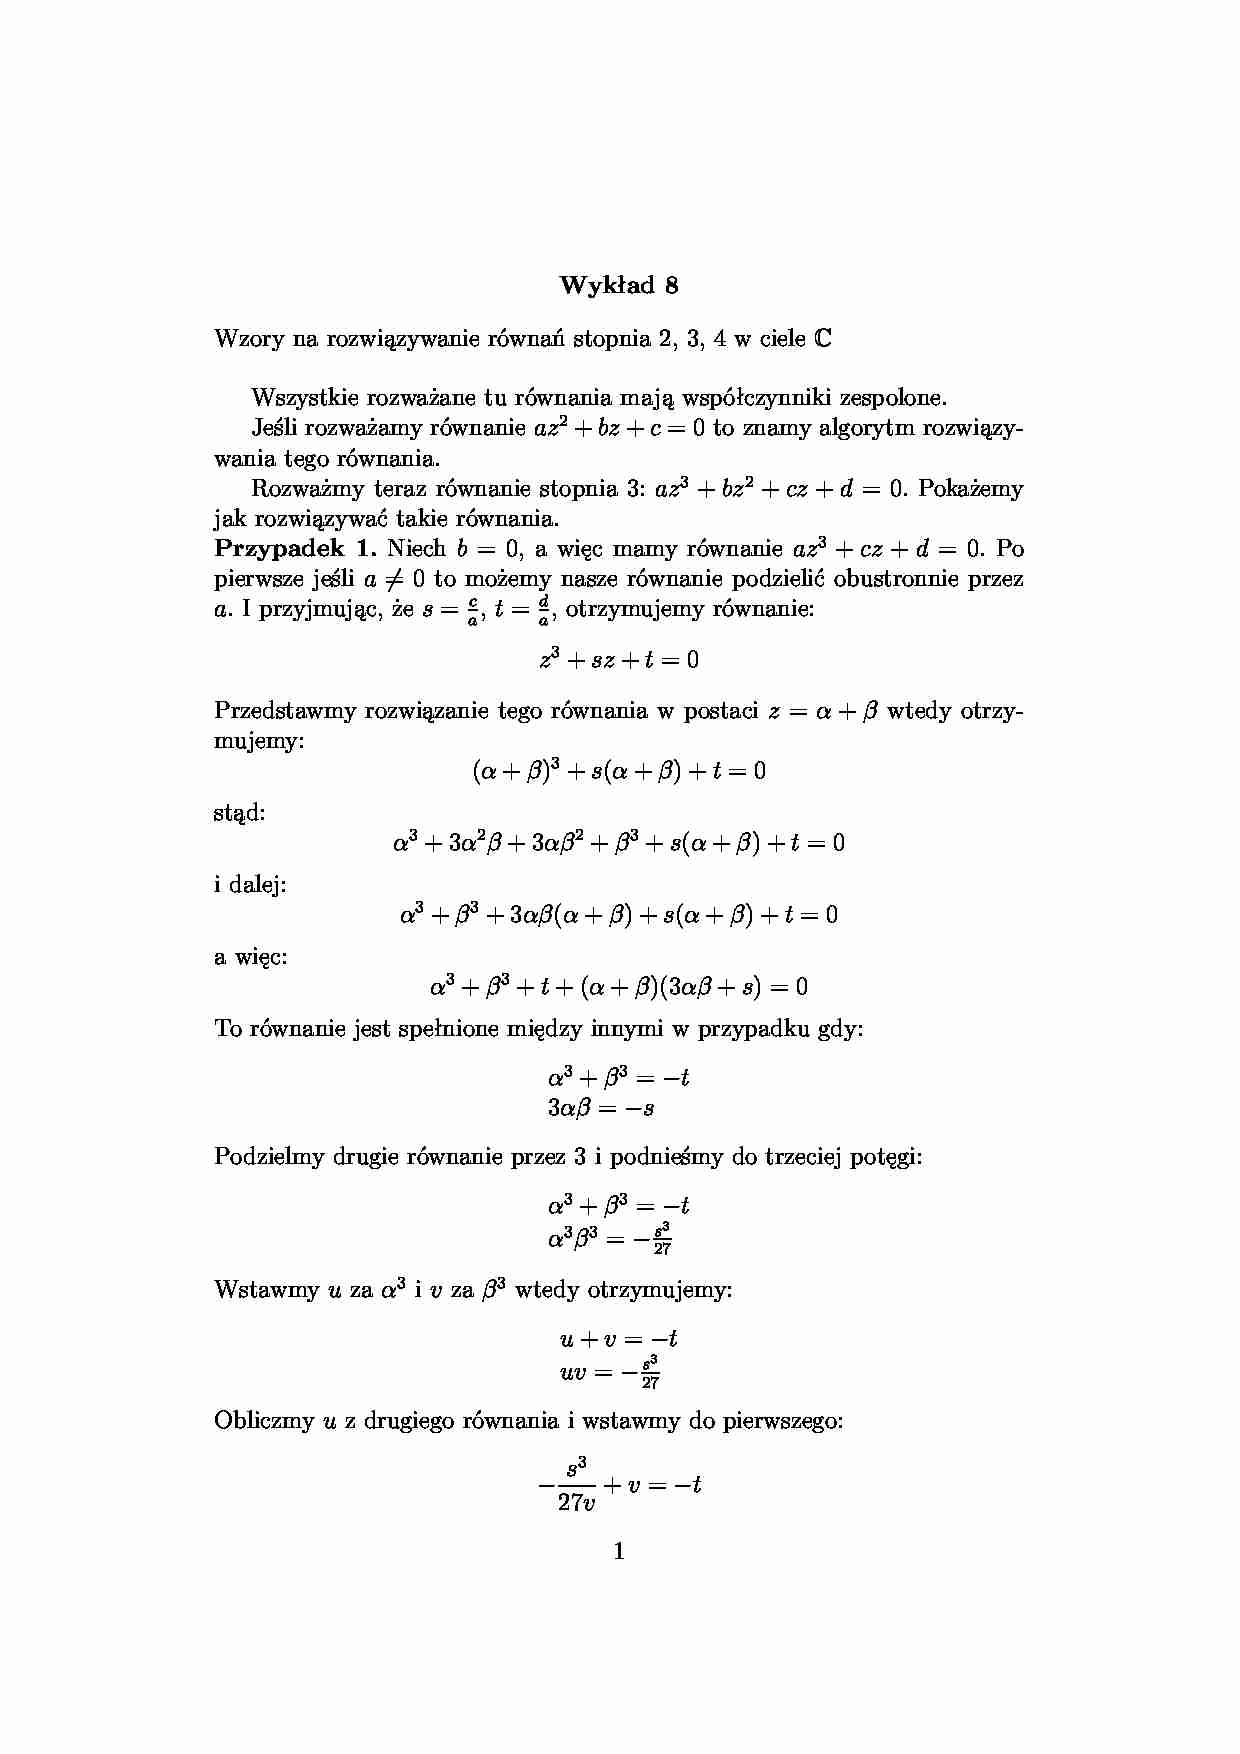 równania stopnia 2, 3 i 4 -  Wykład 8 - strona 1